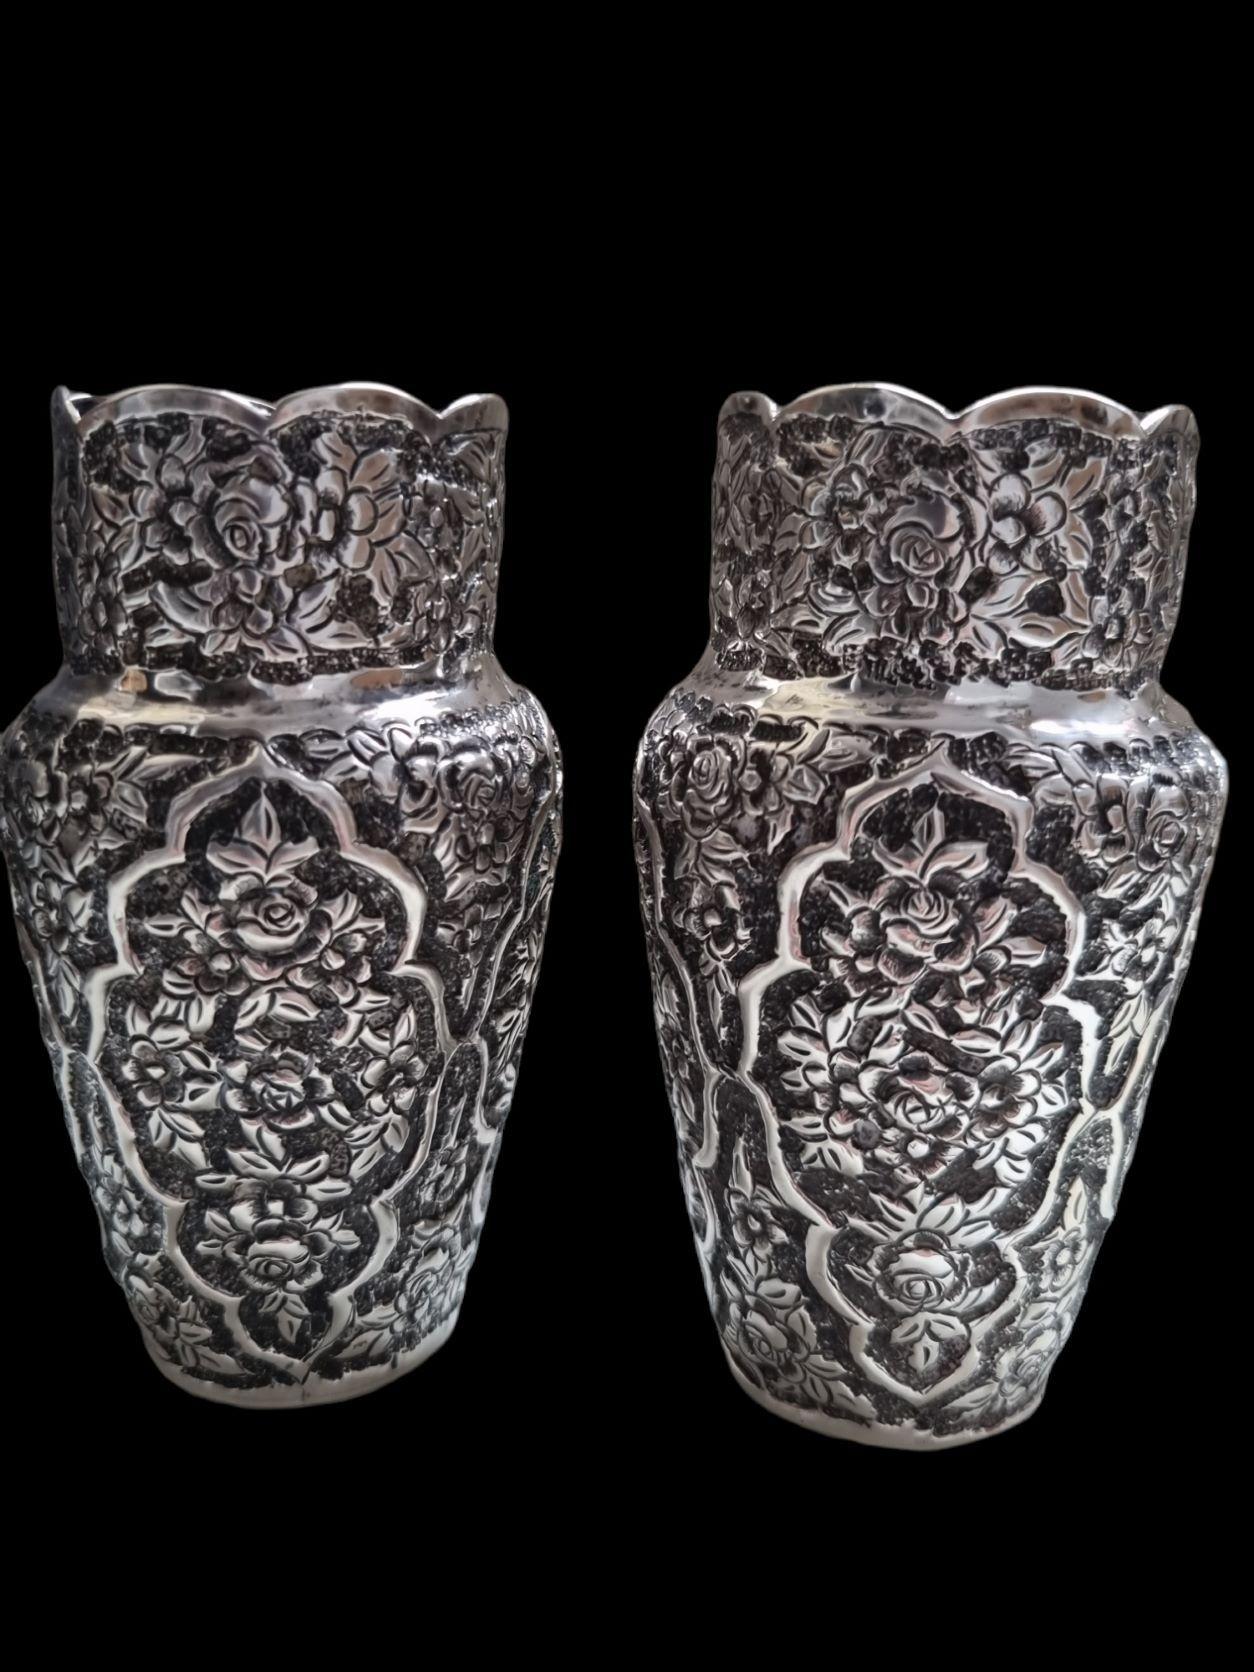 Ein Paar  Handgefertigt  Qhalamzani Silber Persisch  Becher,  ende des 19. Jahrhunderts, Isfahan.
Ein Paar Silberbecher mit spitzer Form, reichlich handgefertigtes Repoussé, verziert mit geschnitzten stilisierten Blumen- und Blattornamenten  durch